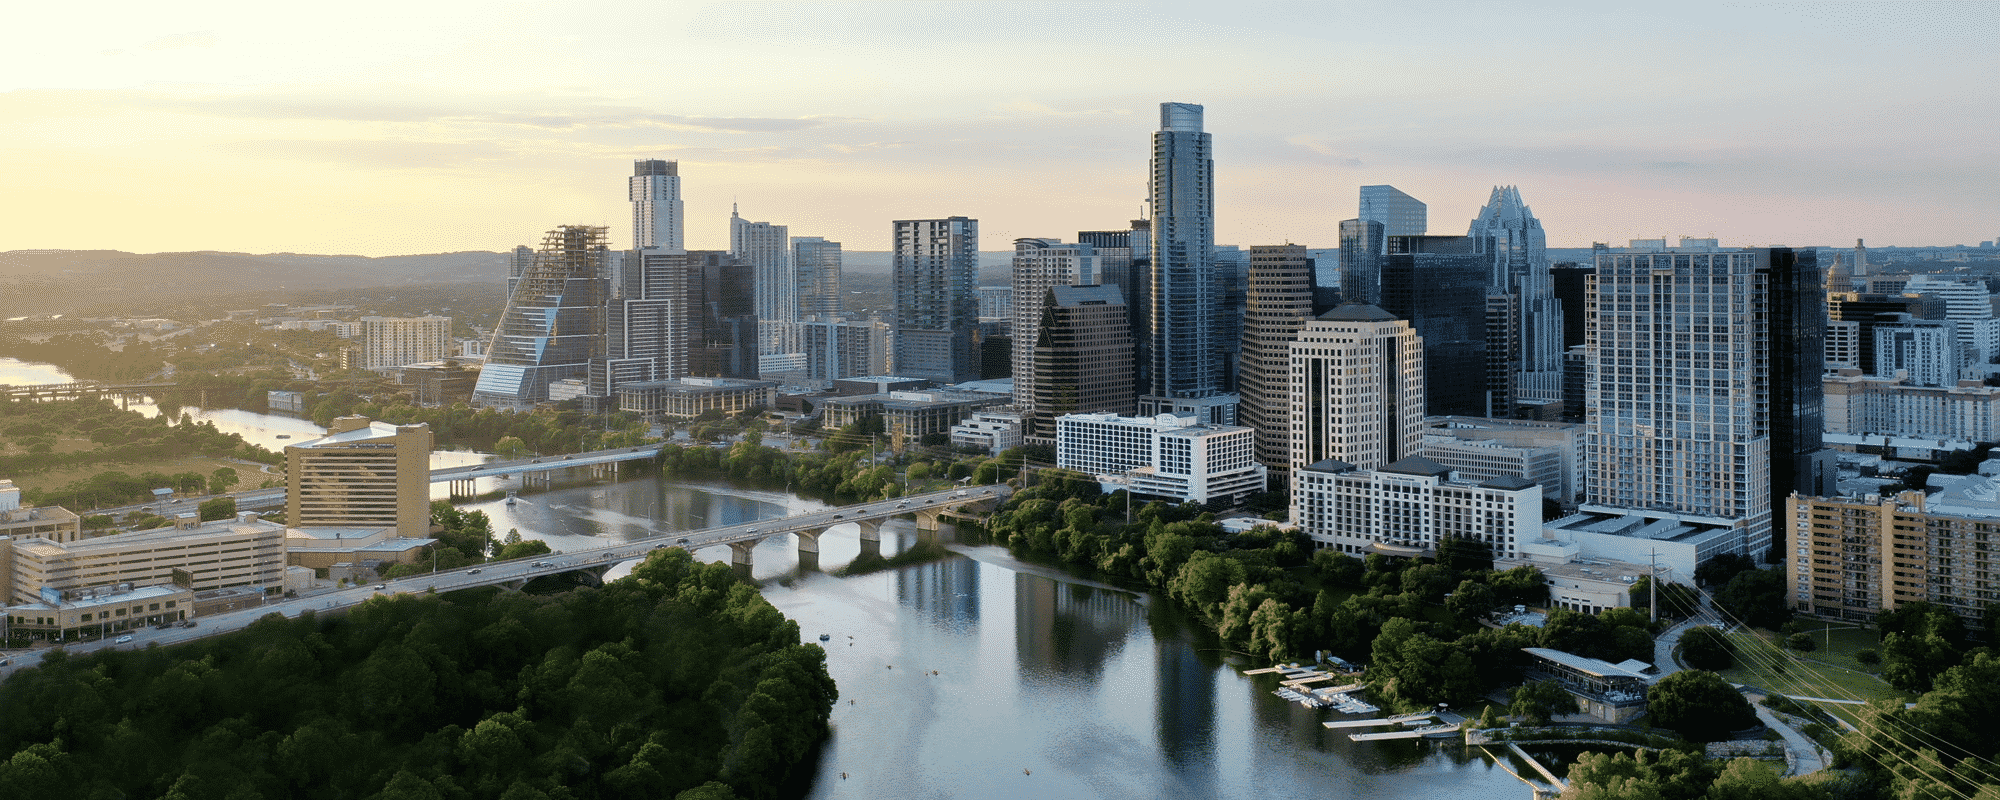 Austin Skyline | Austin or Miami